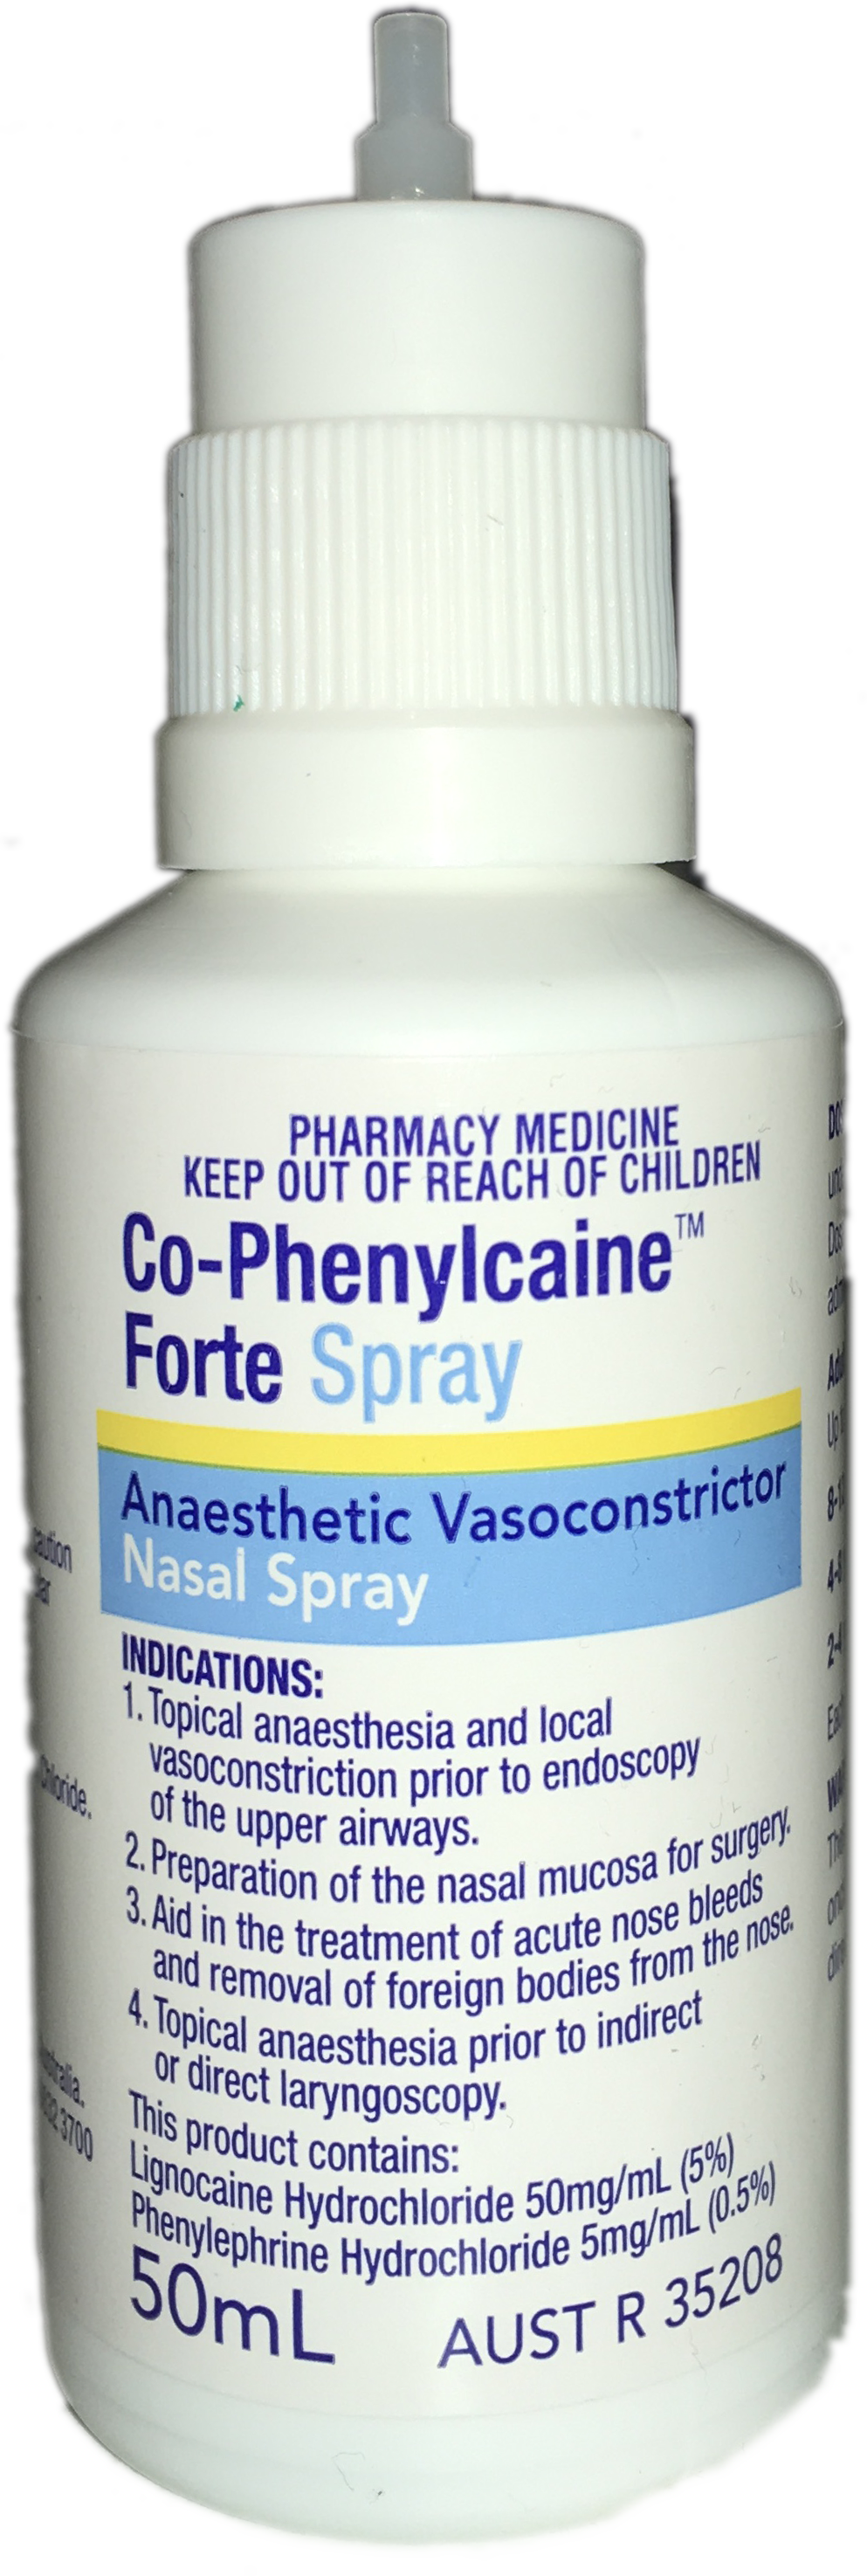 Cophenylcaine